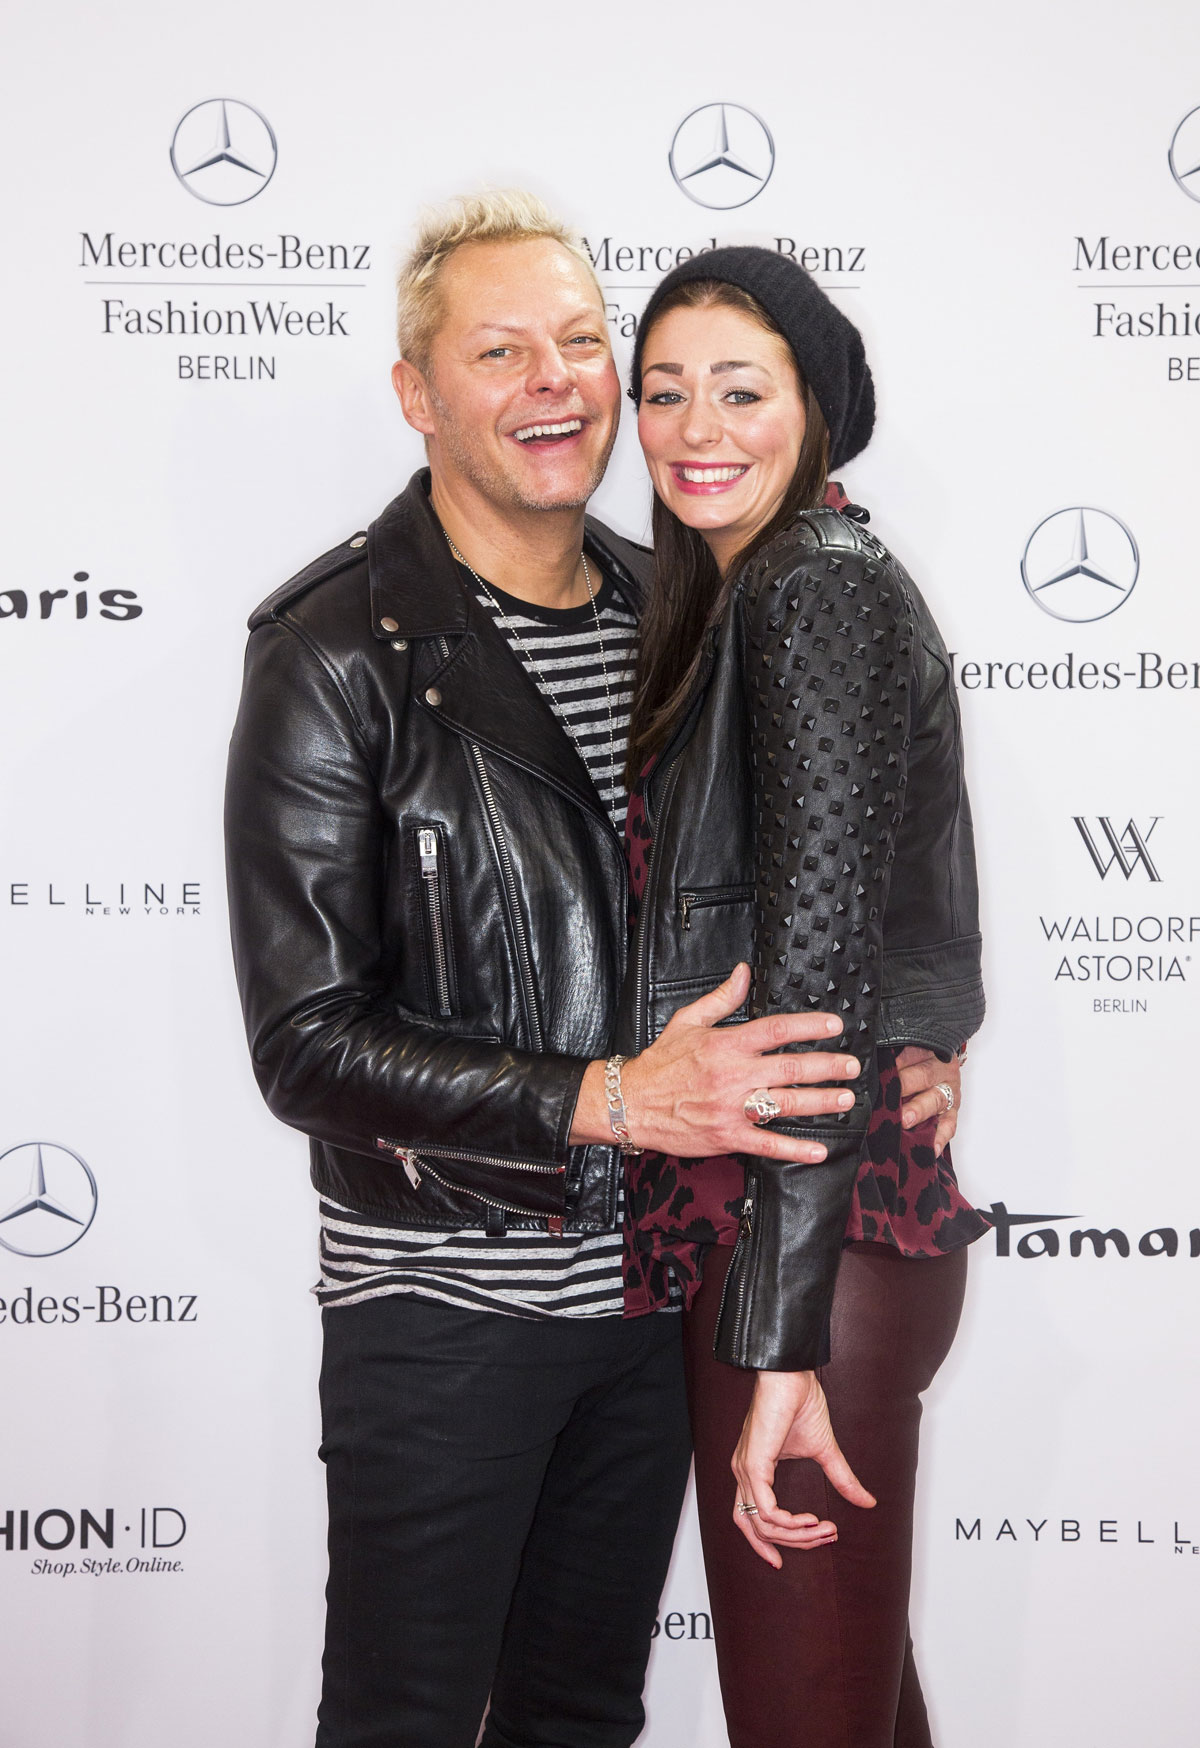 Fee Fahrenkrog Petersen attends Mercedes-Benz Fashion Week